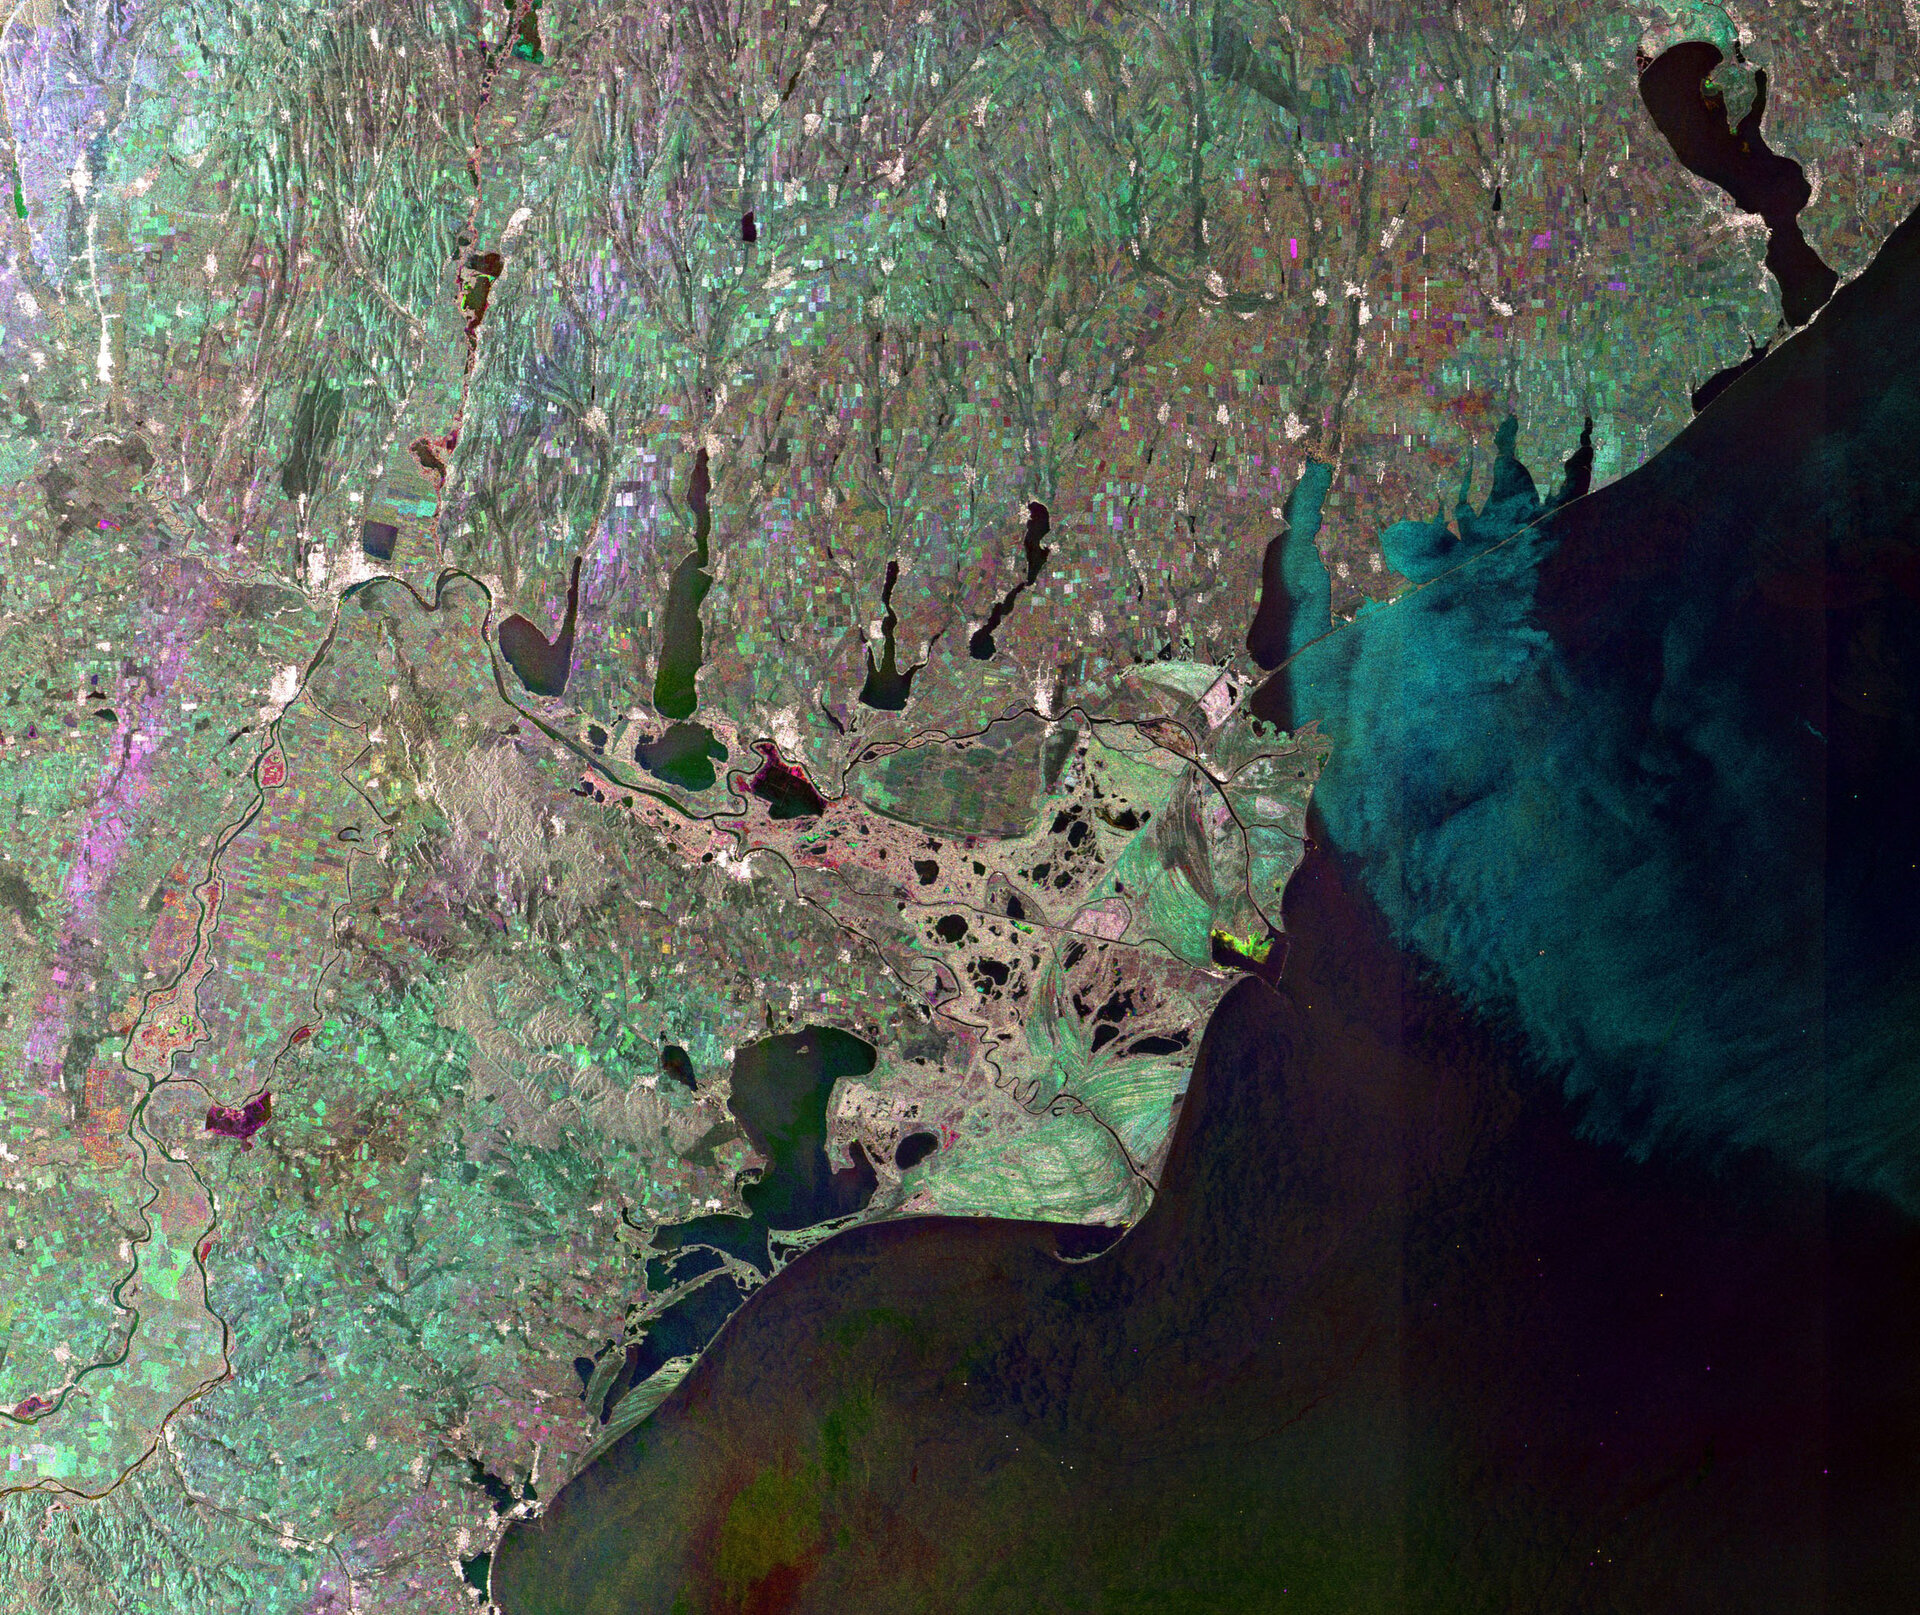 Radar image of the Danube Delta